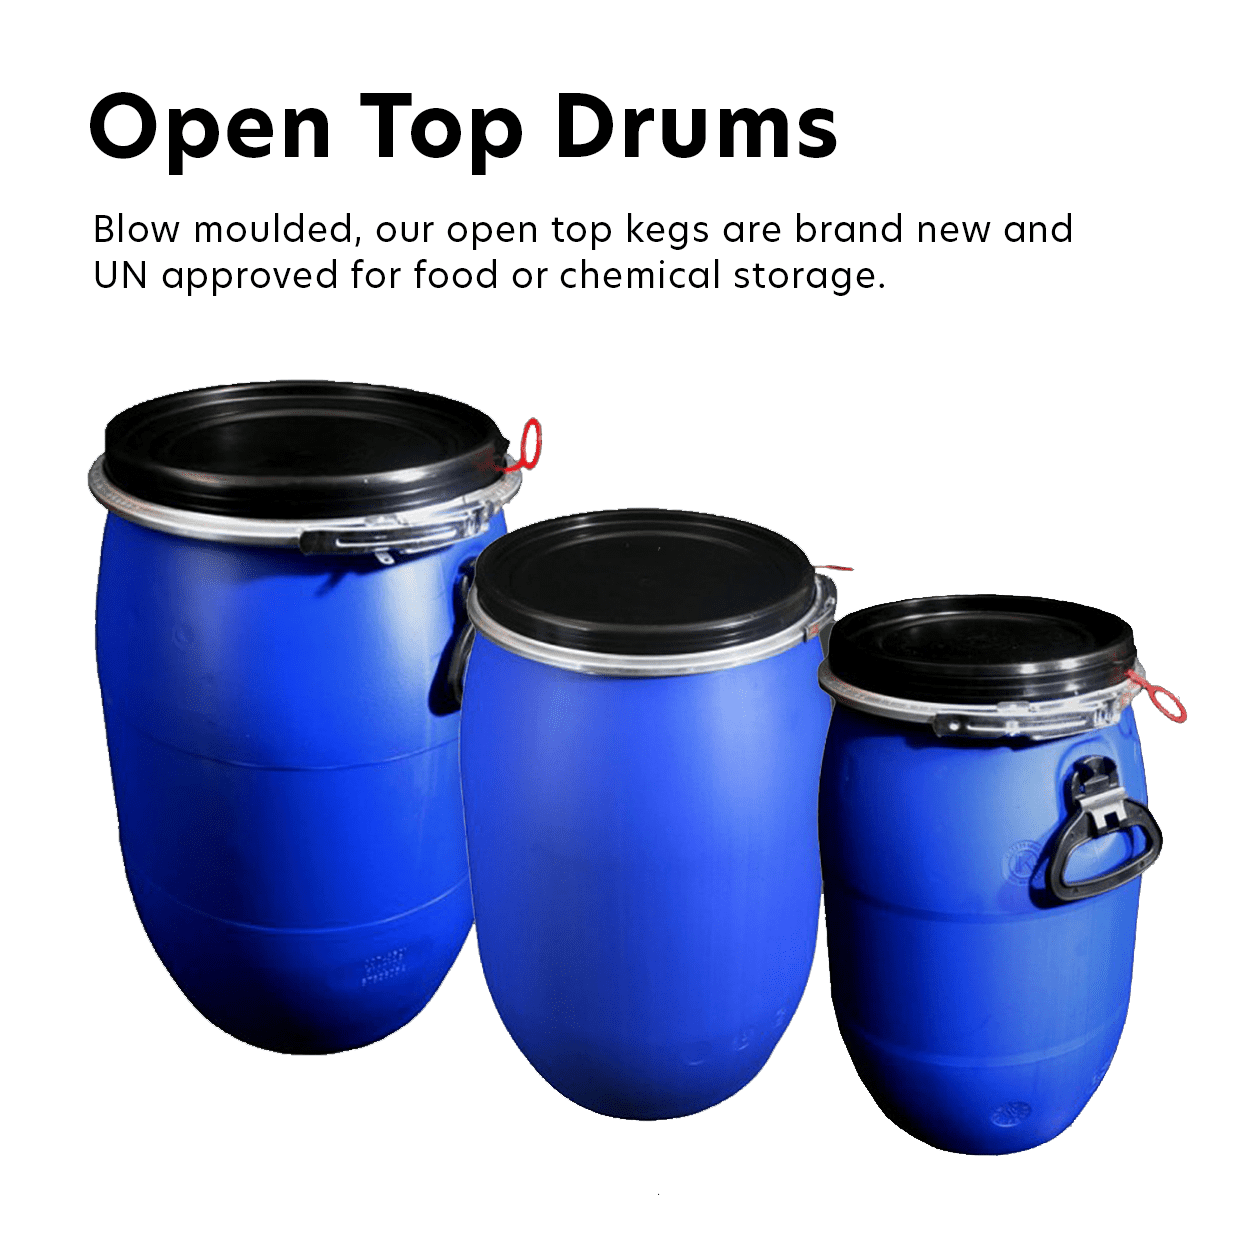 Open Top Drums